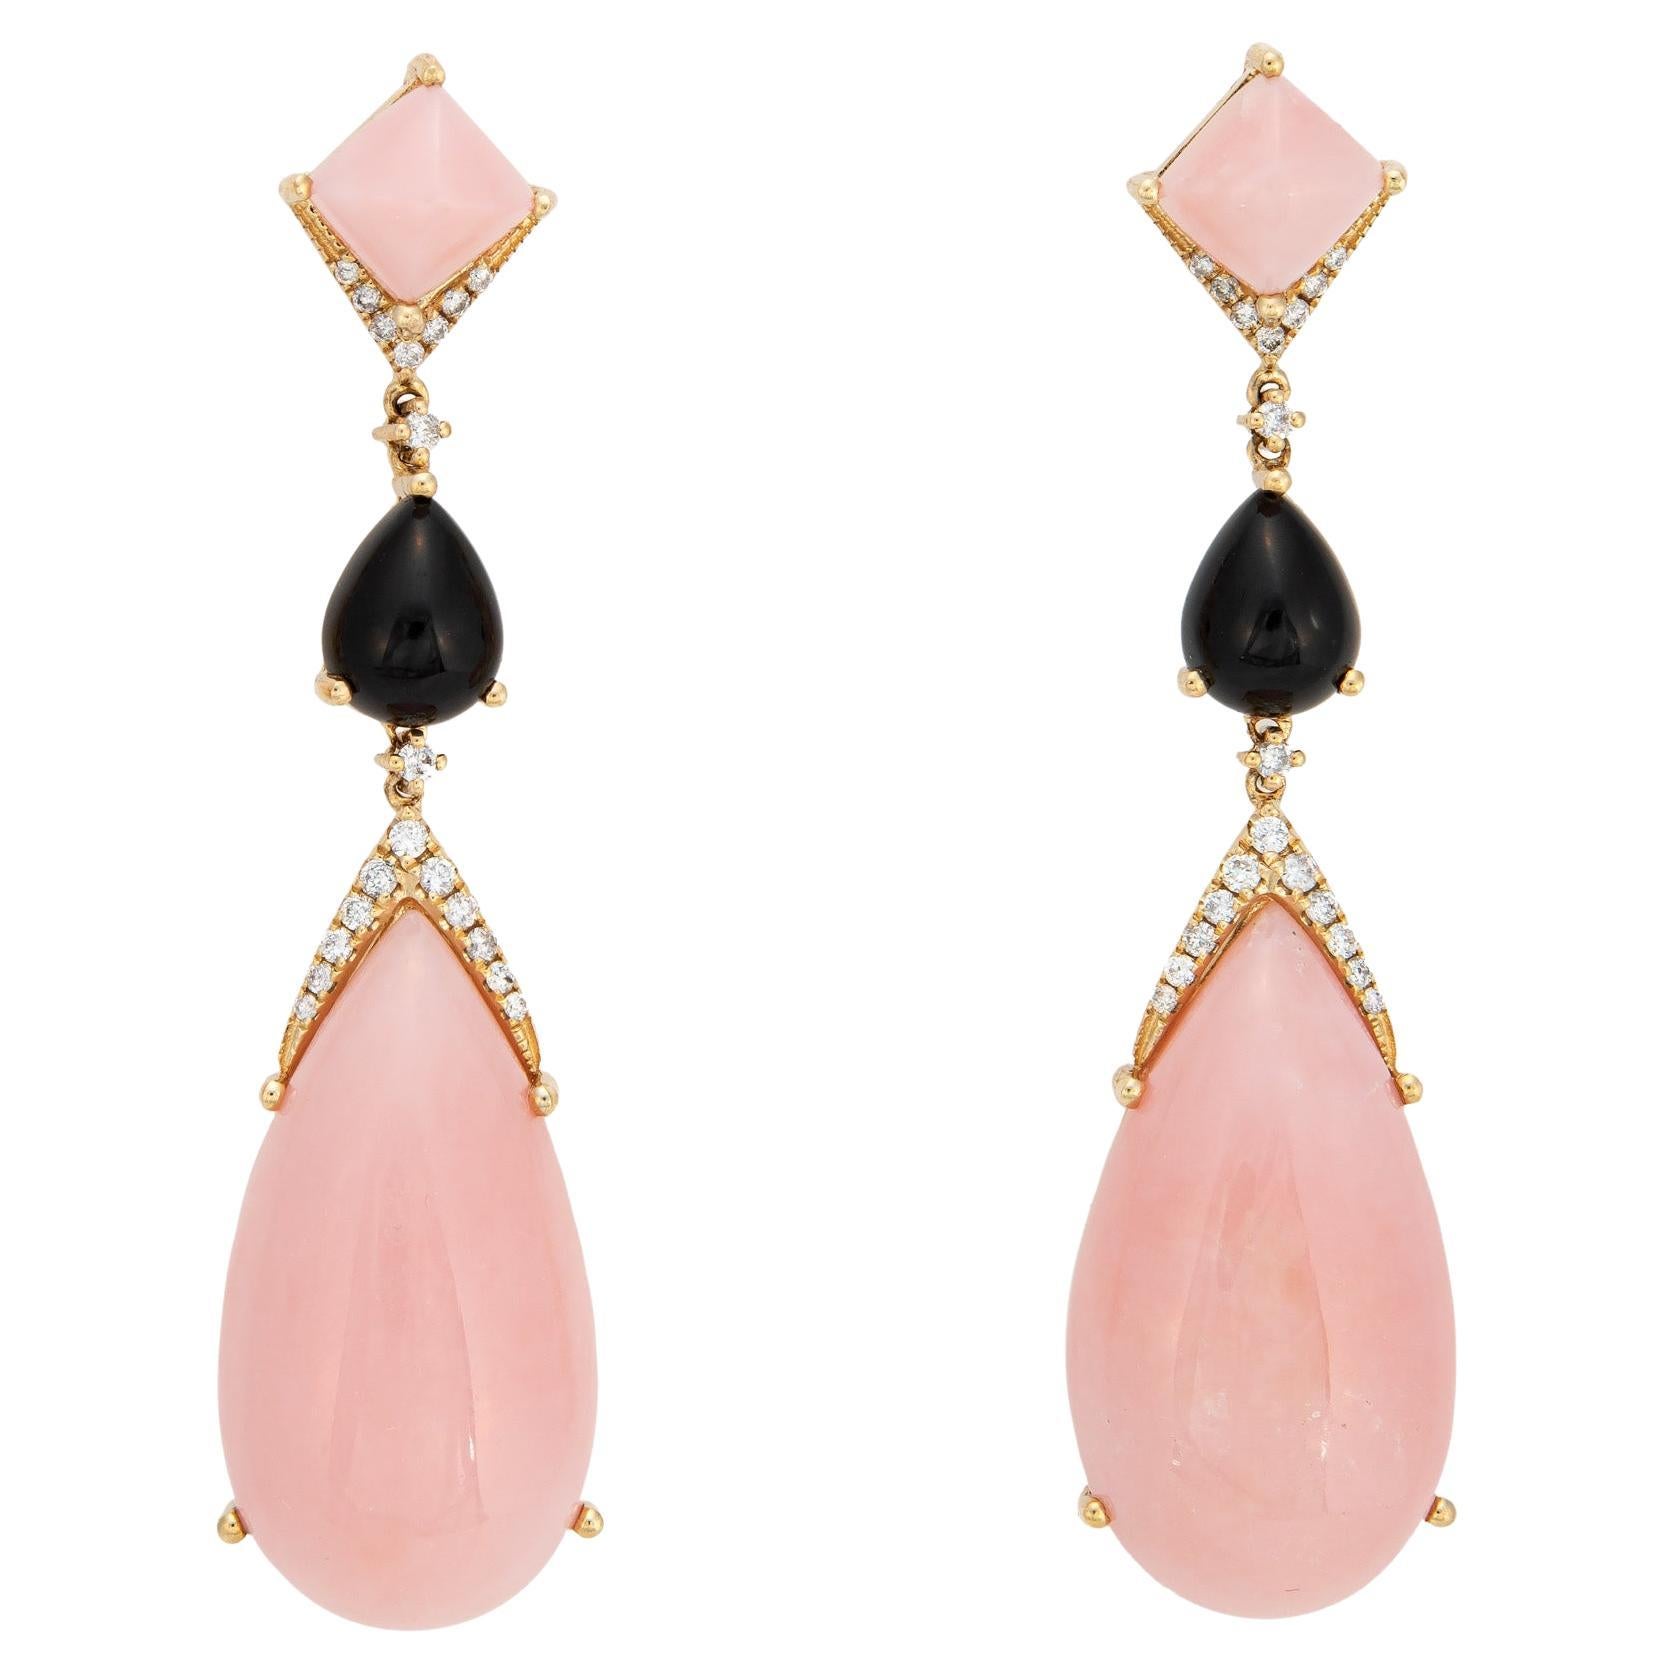 Pink Opal Onyx Diamond Earrings Long Drops 14k Yellow Gold Estate Jewelry